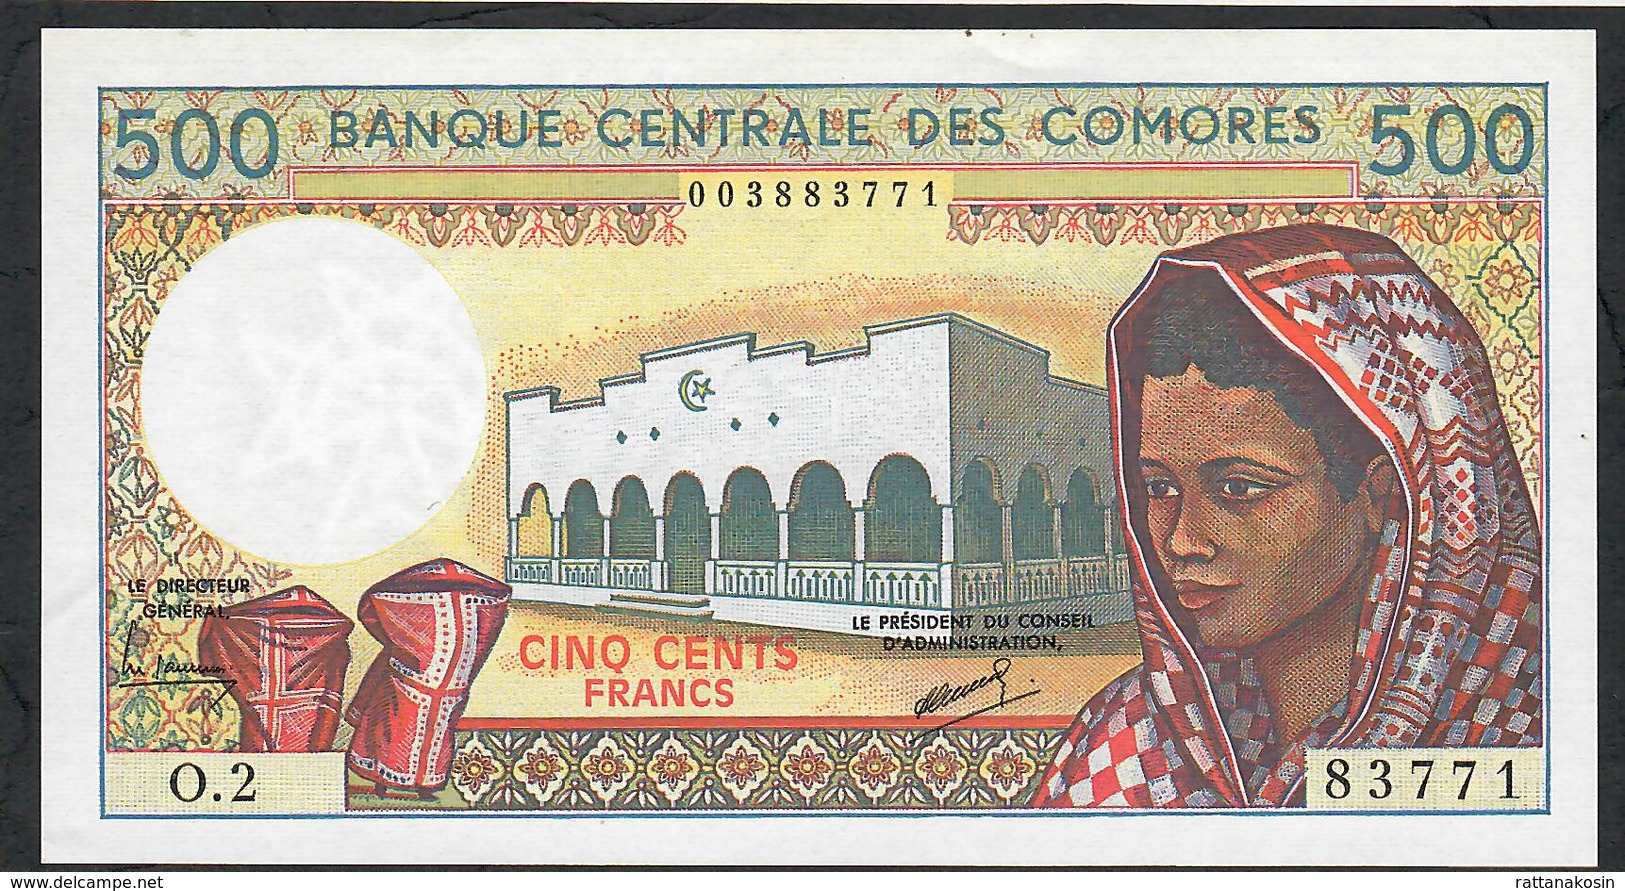 COMORES ERROR P10b INVERTED WATERMARK 500 FRANCS 1986 #O.2 Signature 2   UNC. - Comore